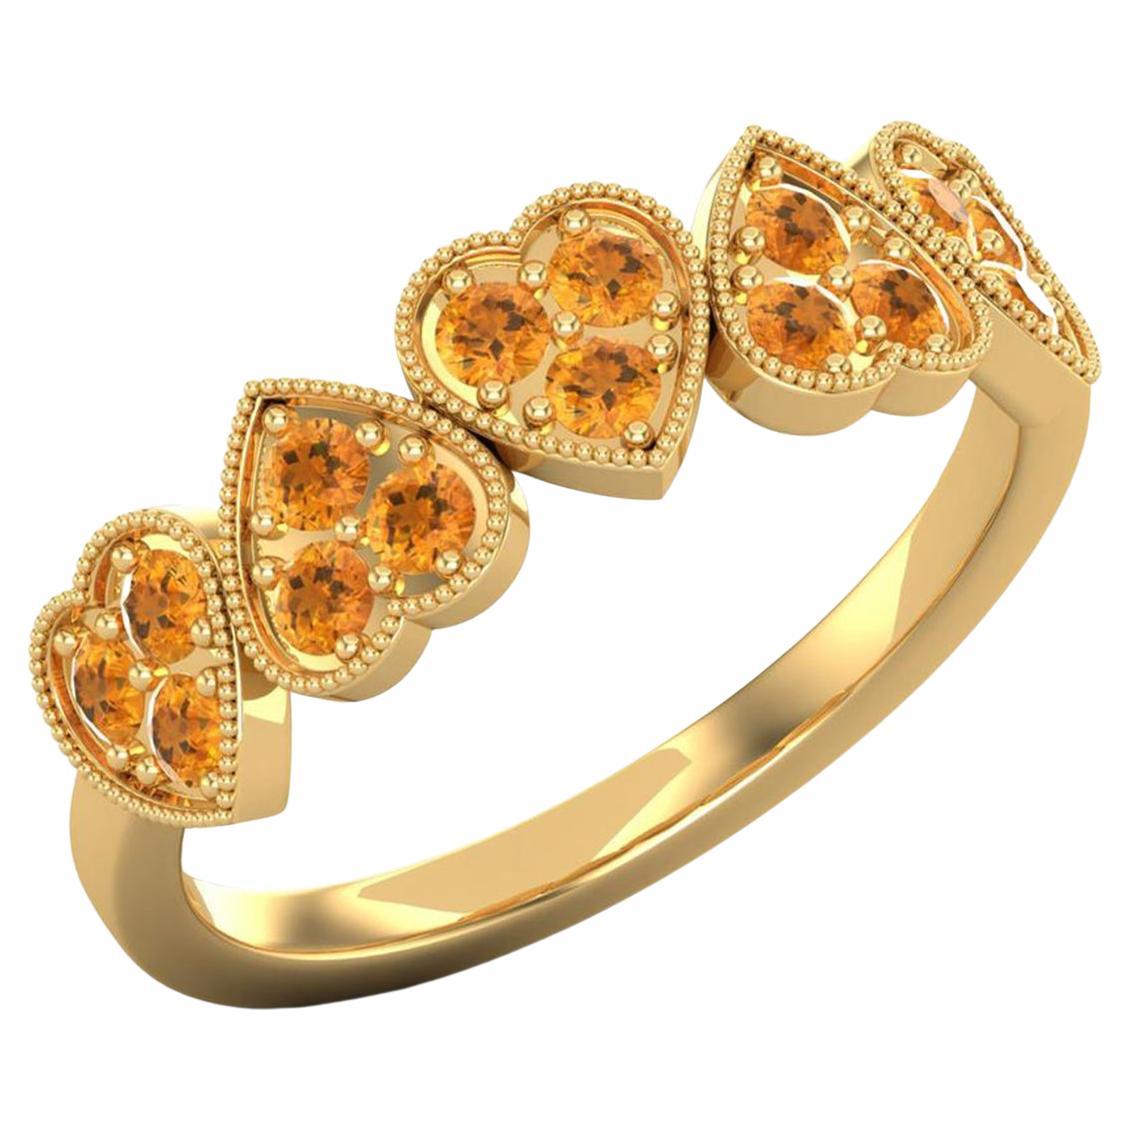 14 Karat Gold Citrine Ring / November Birthstone Ring / Heart Ring for Her For Sale